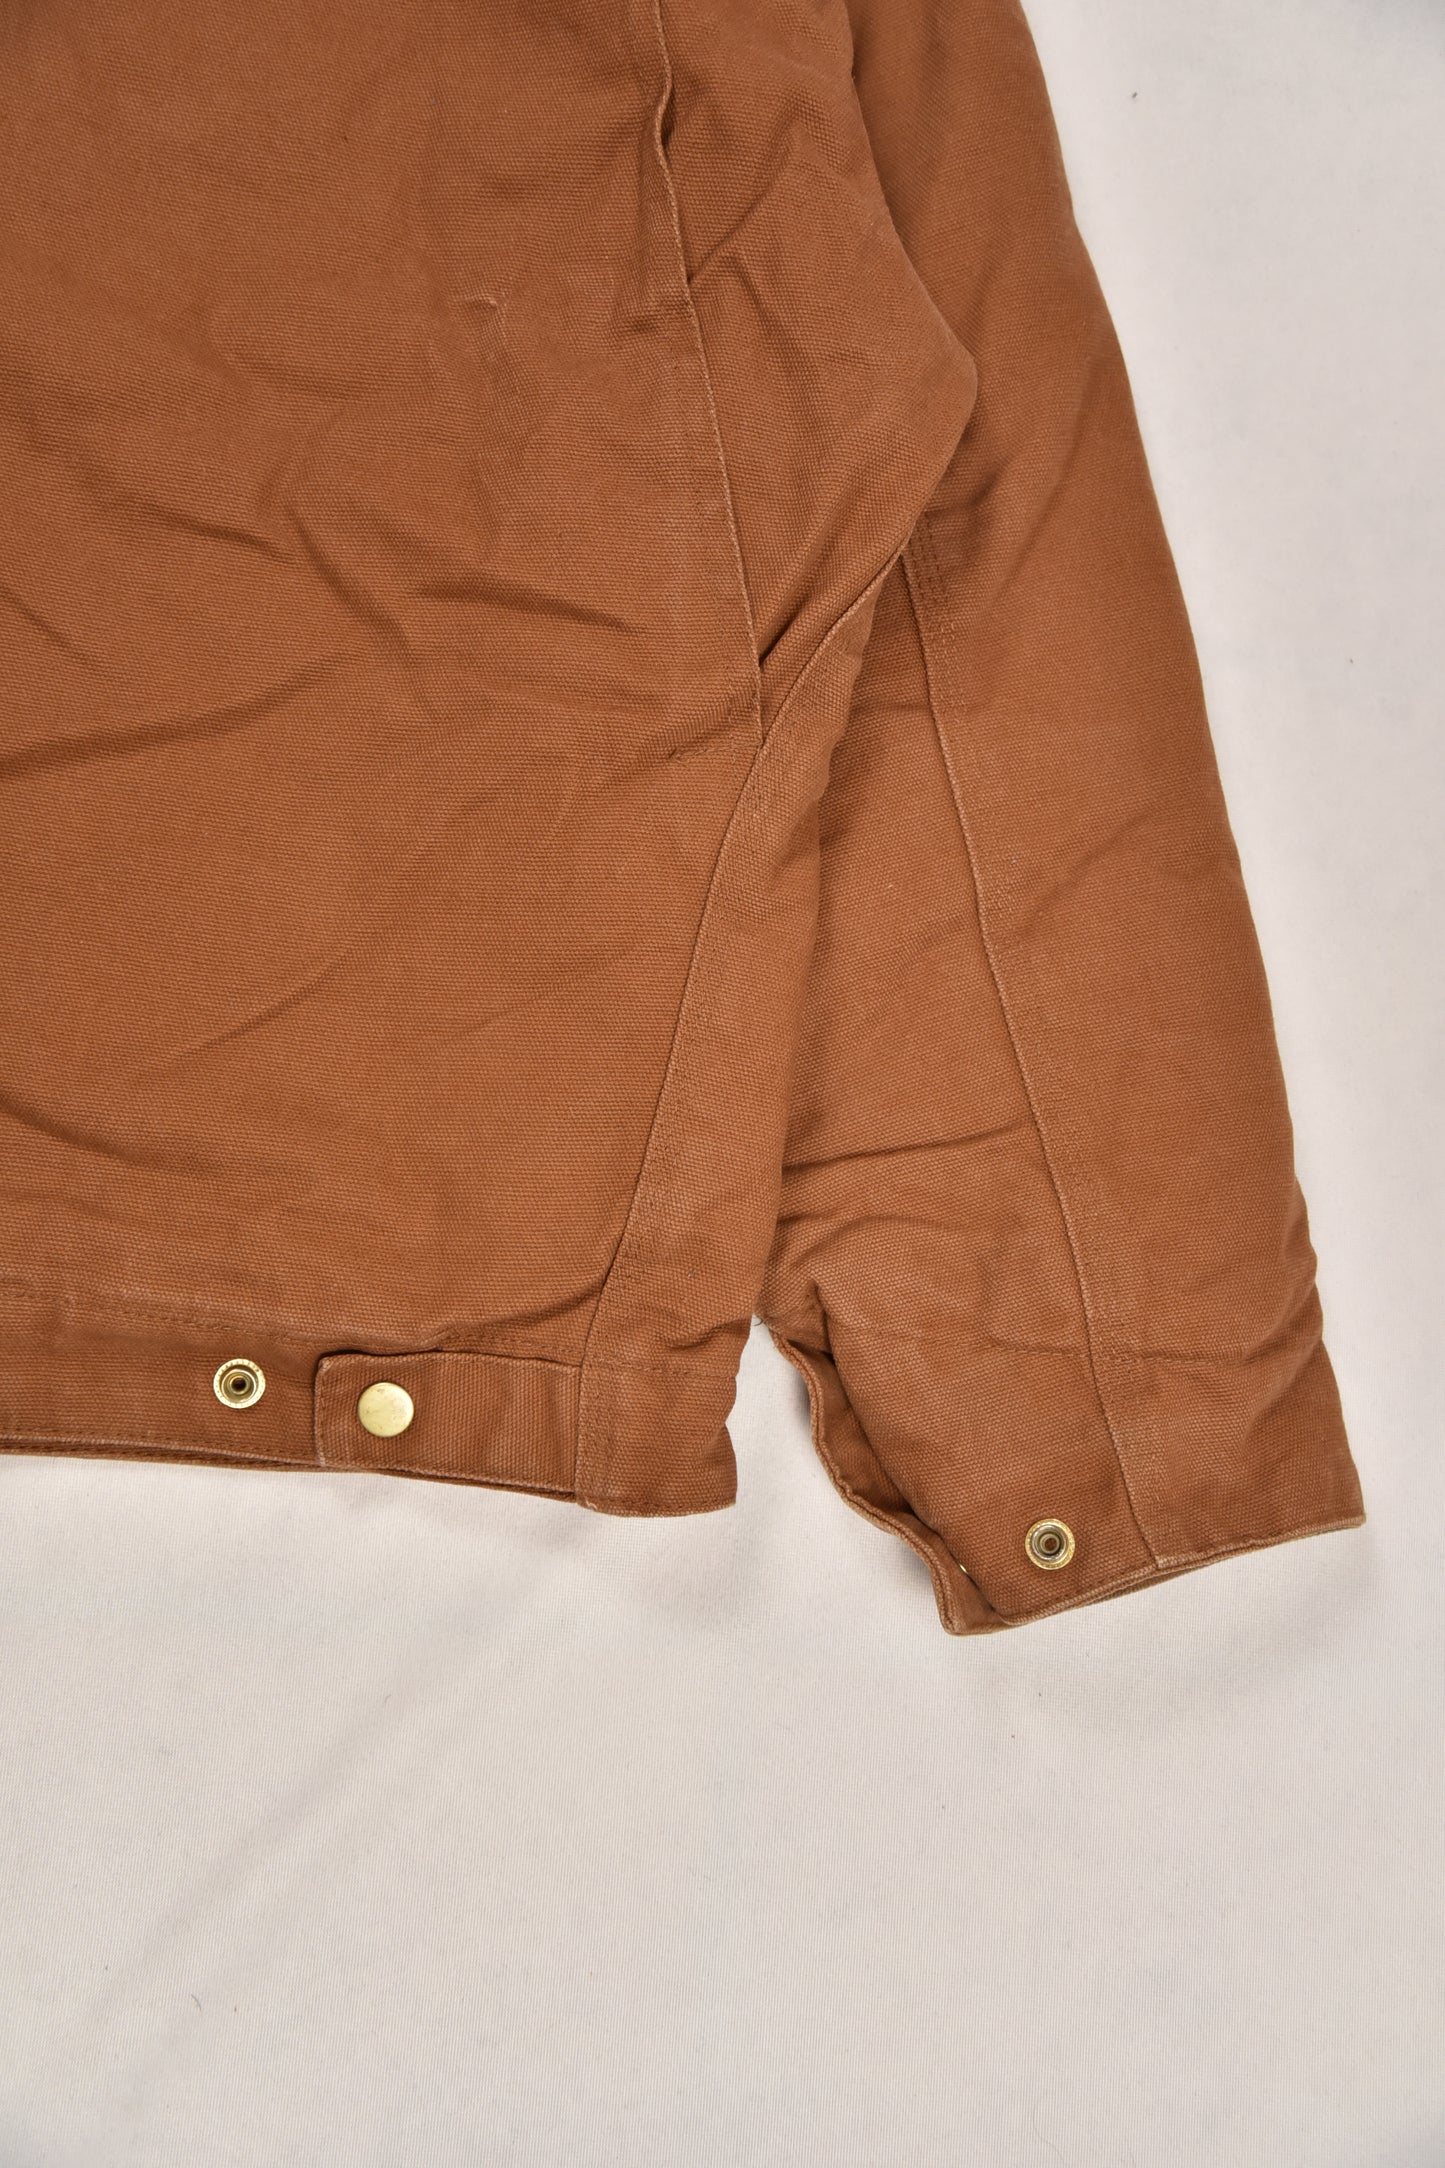 Vintage workwear jacket / M/L